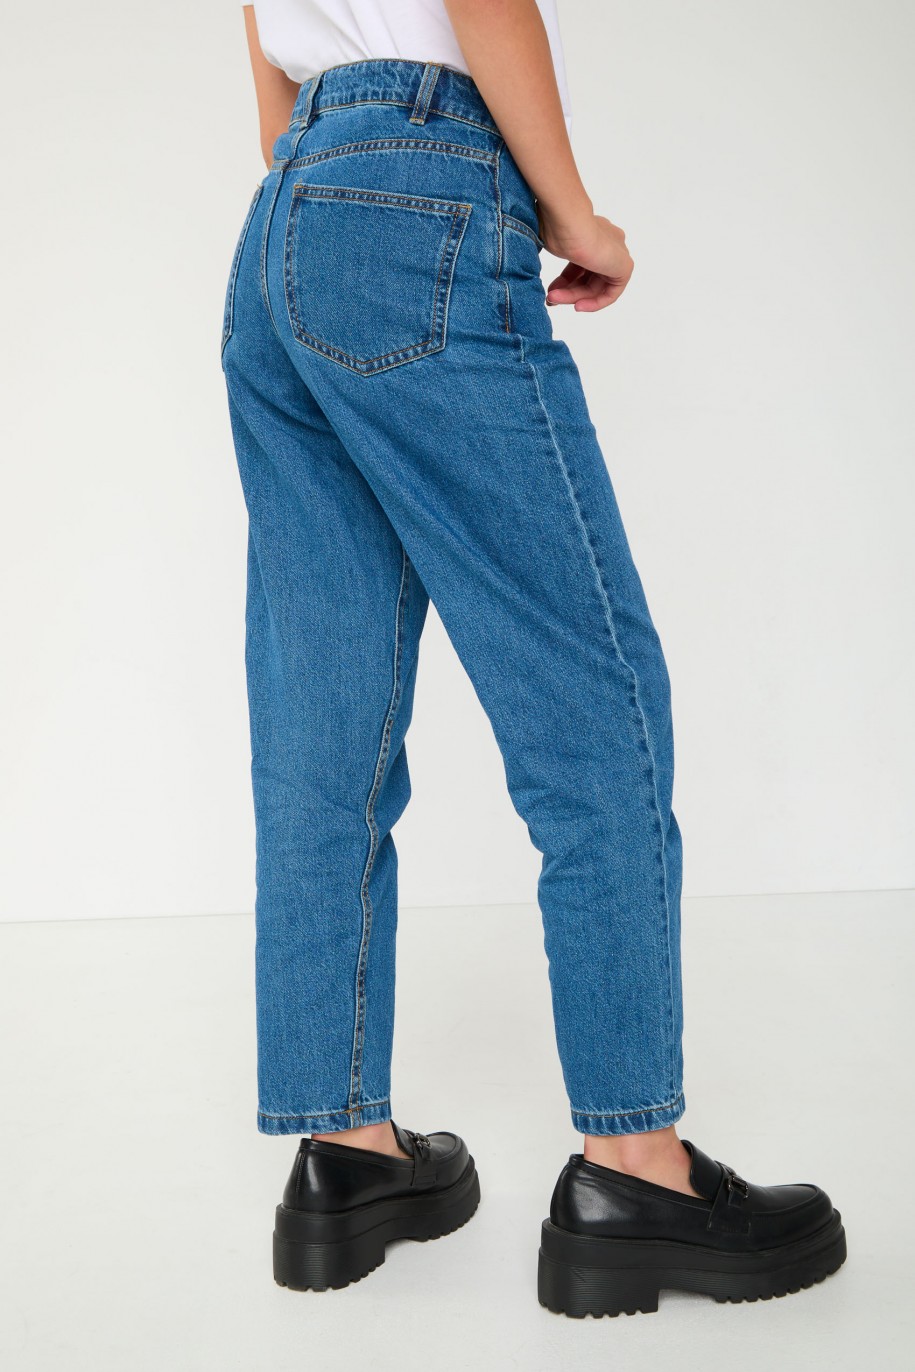 Niebieskie jeansy typu MOM FIT - 45362